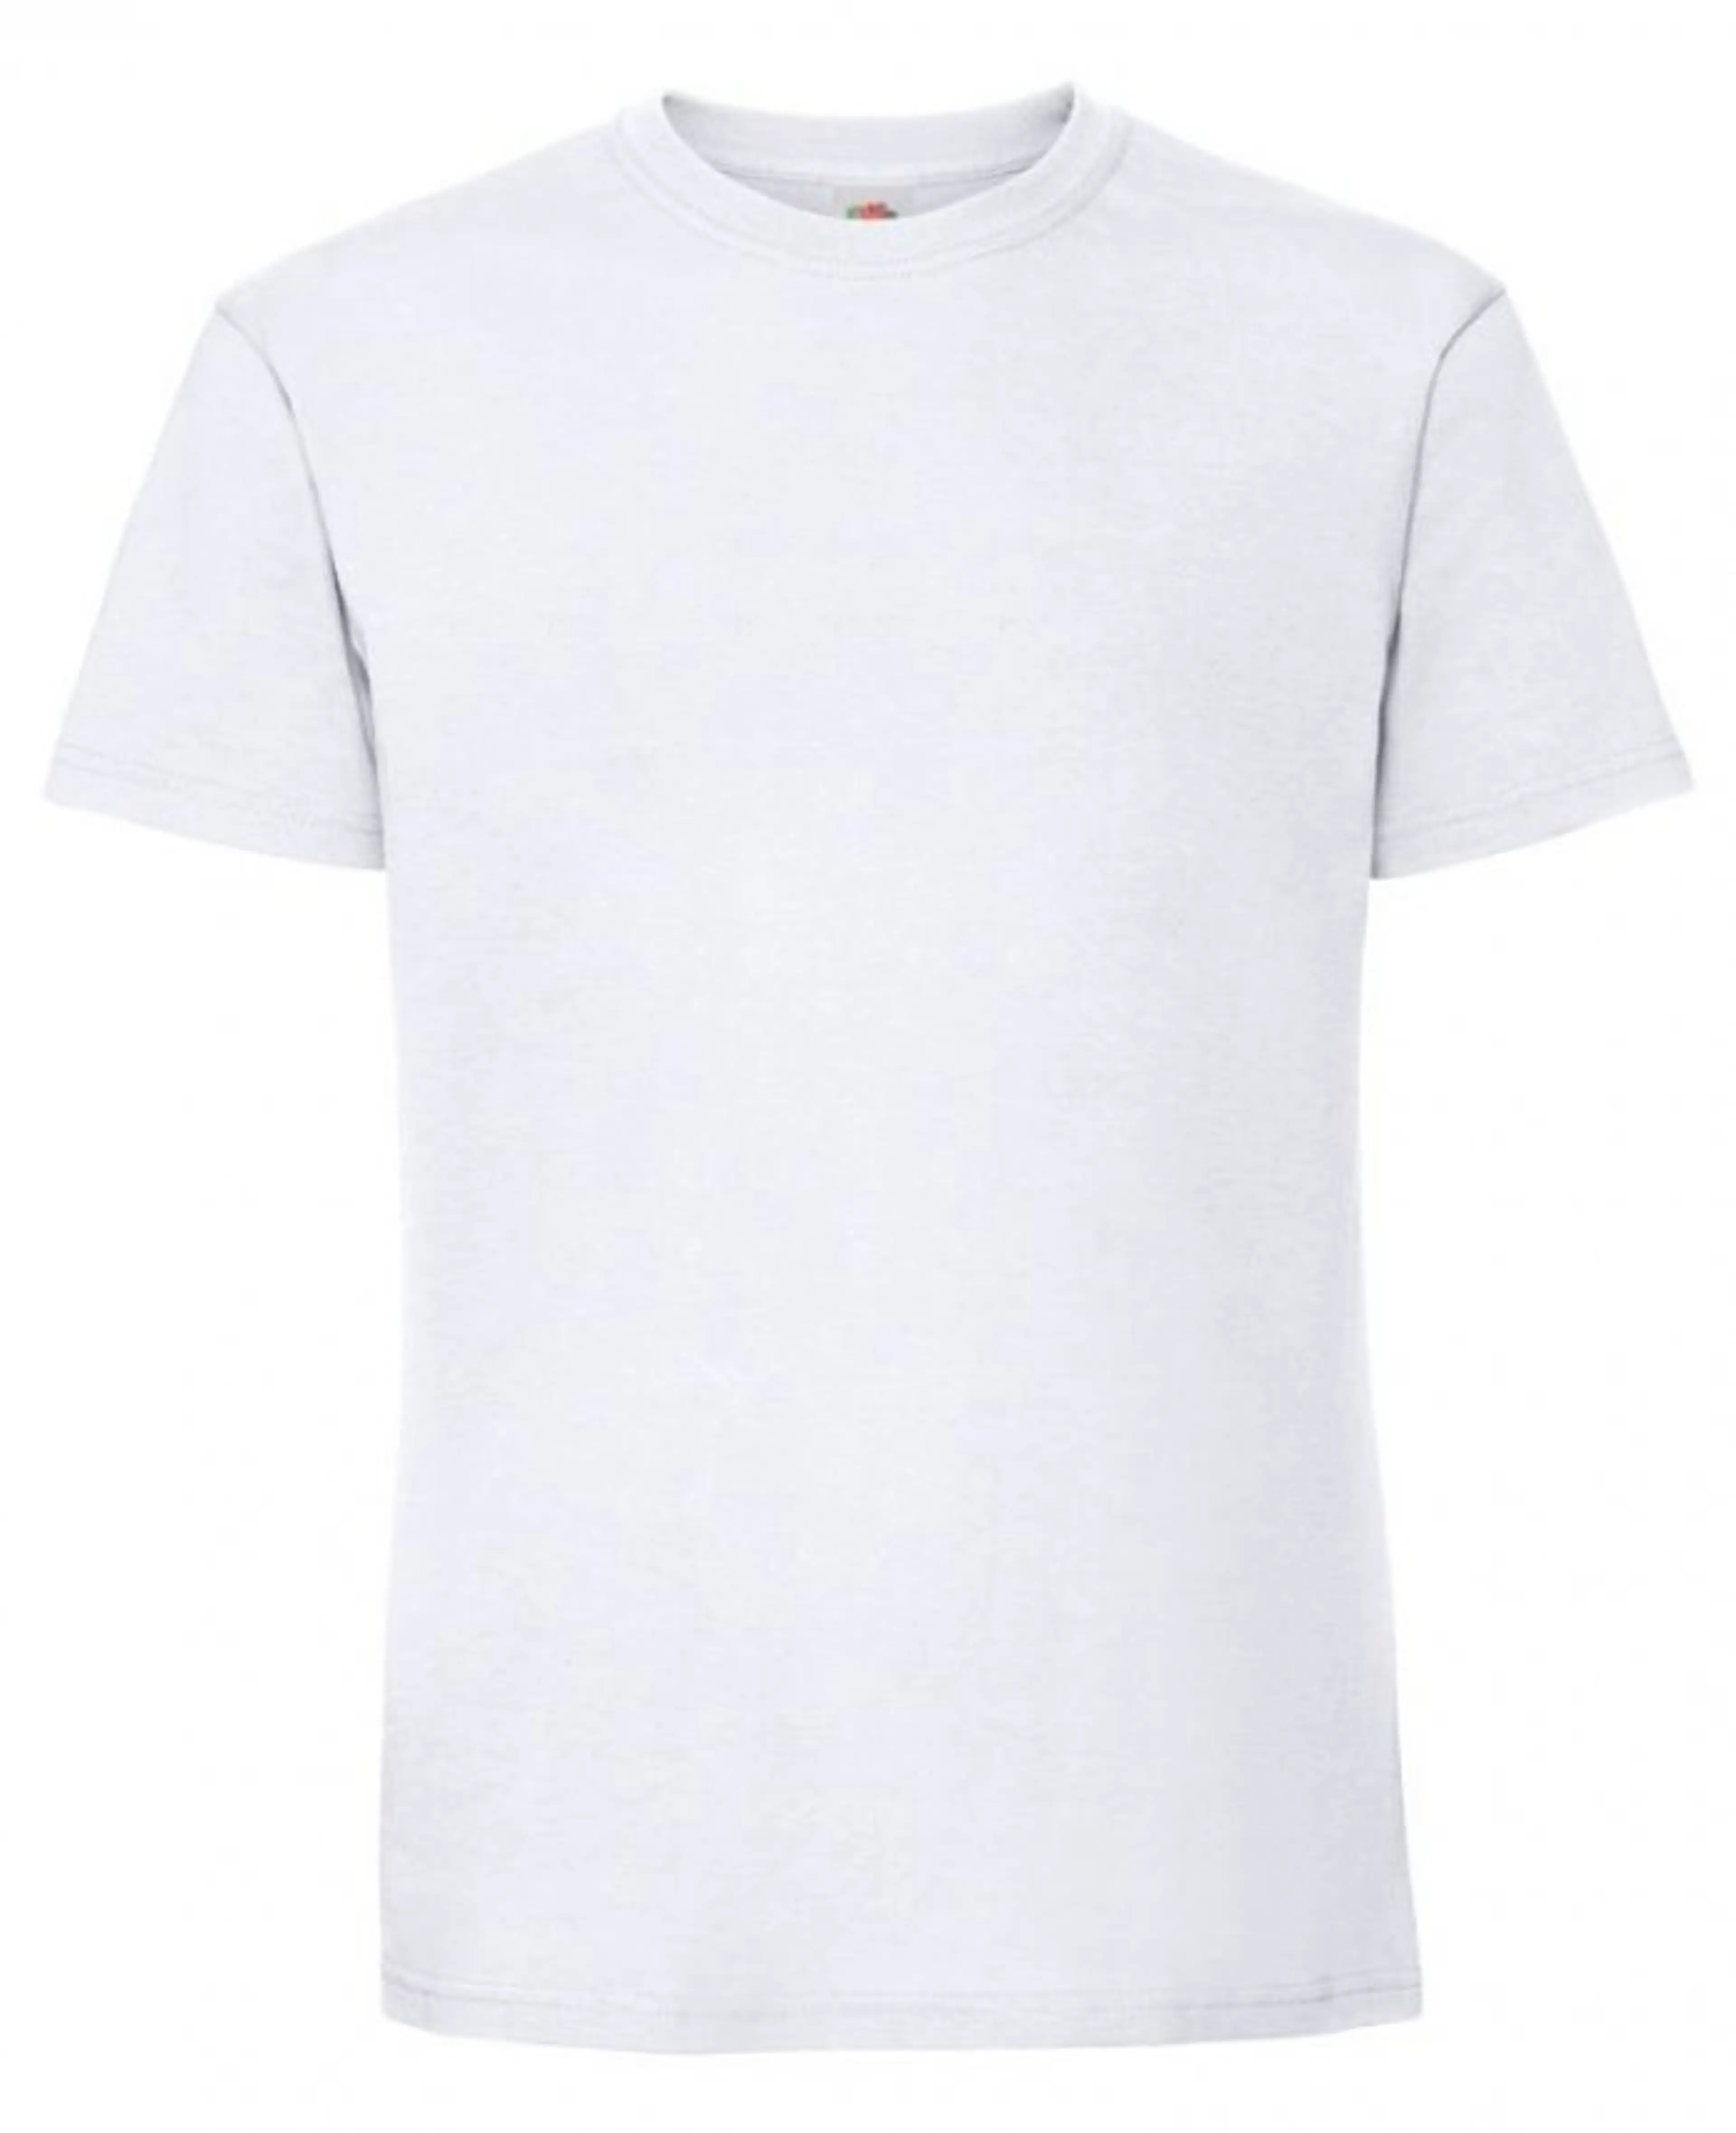 Тениска Мъжка Бяла № 75